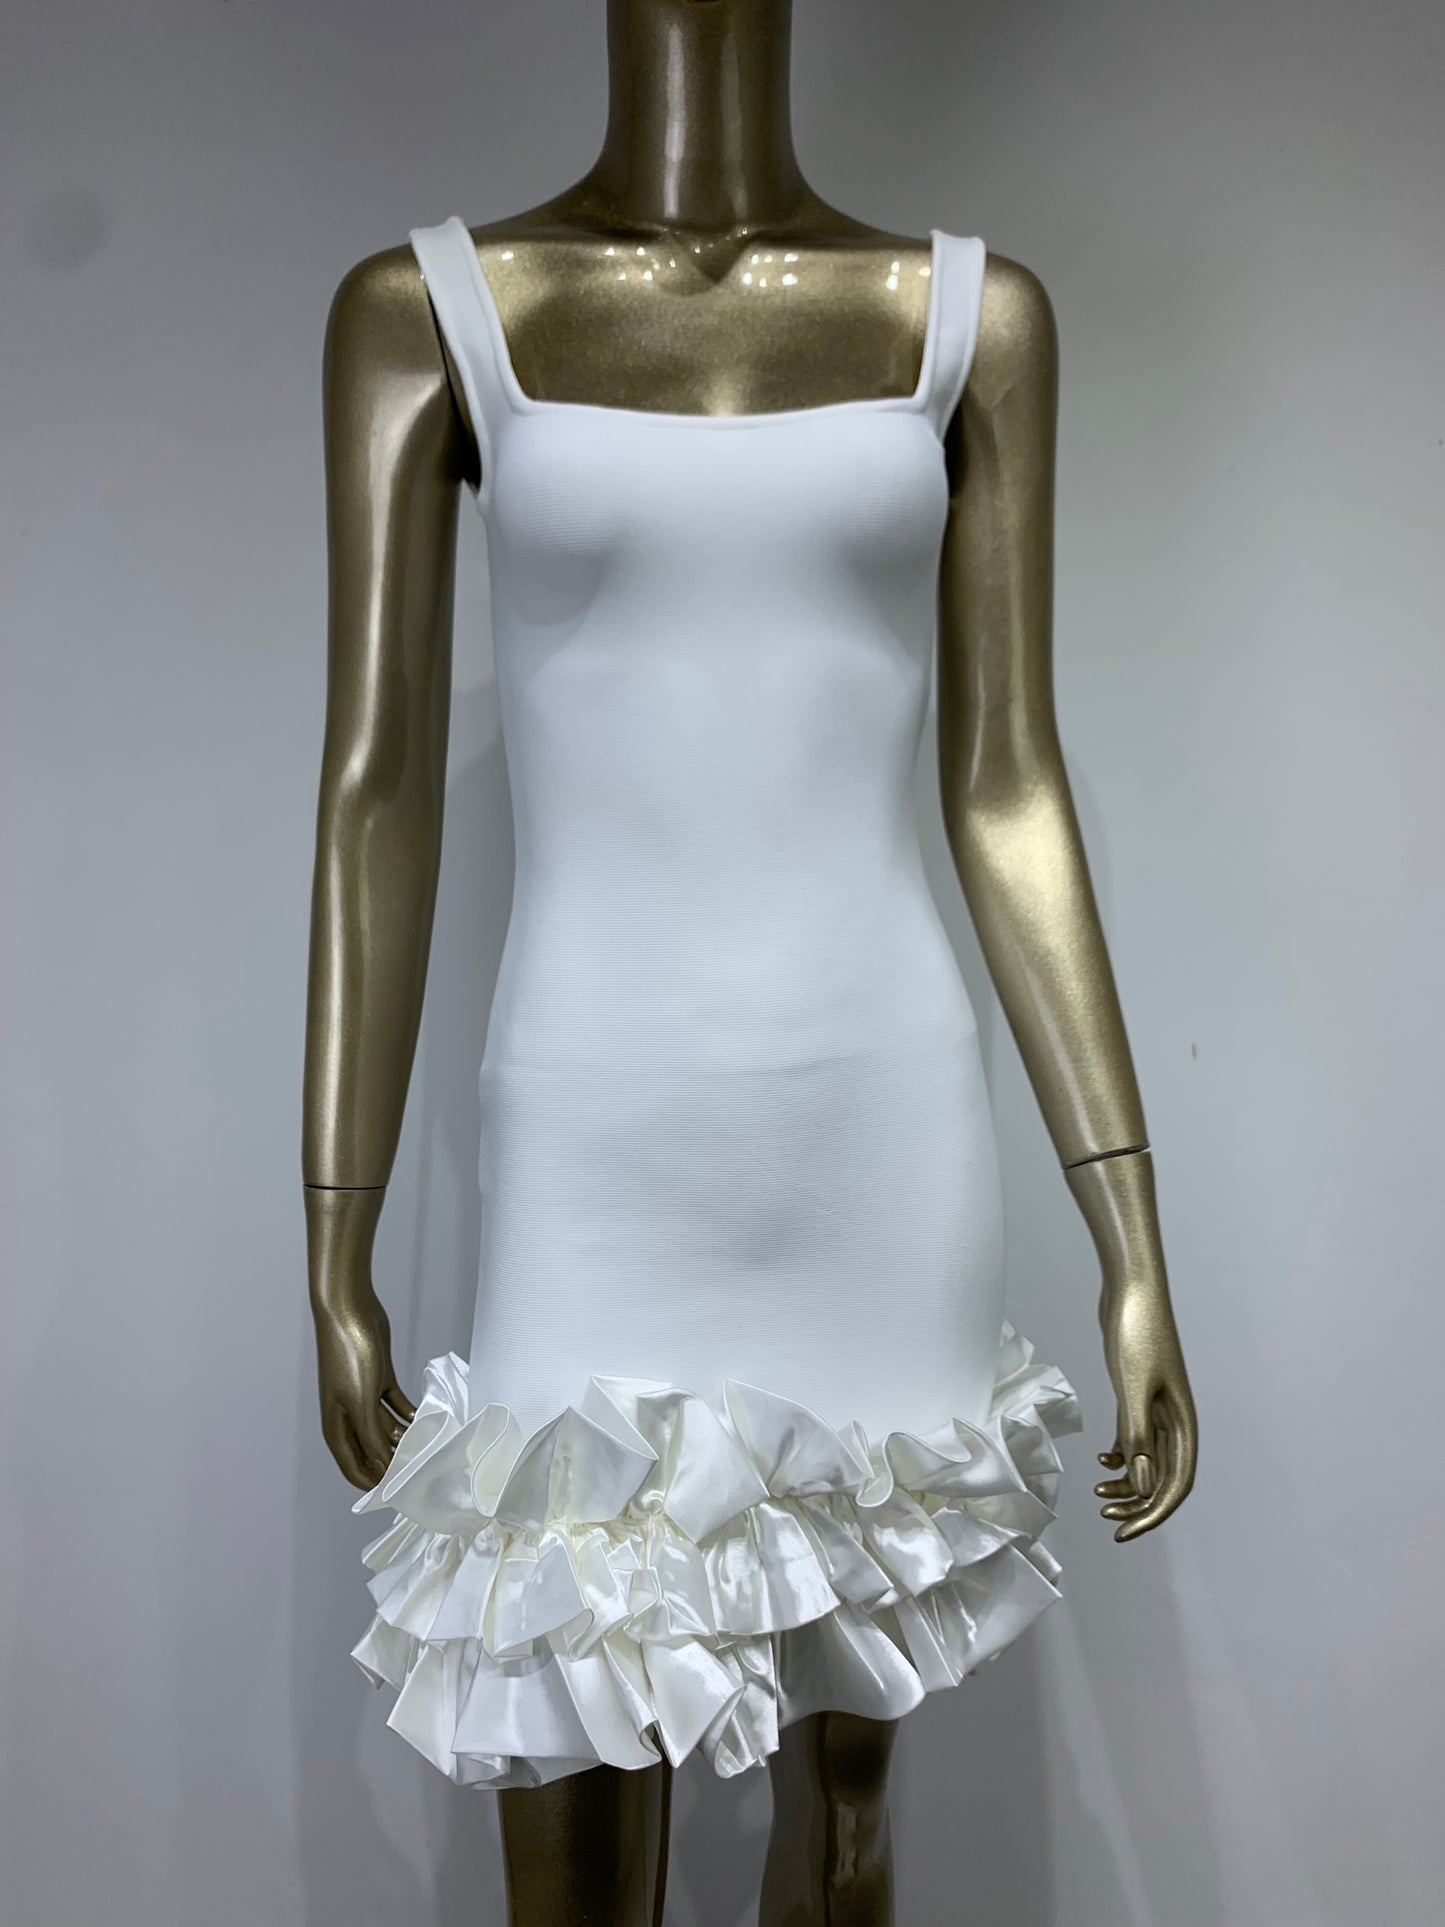 Stacy Bandage Mini Dress Fashion Closet Clothing